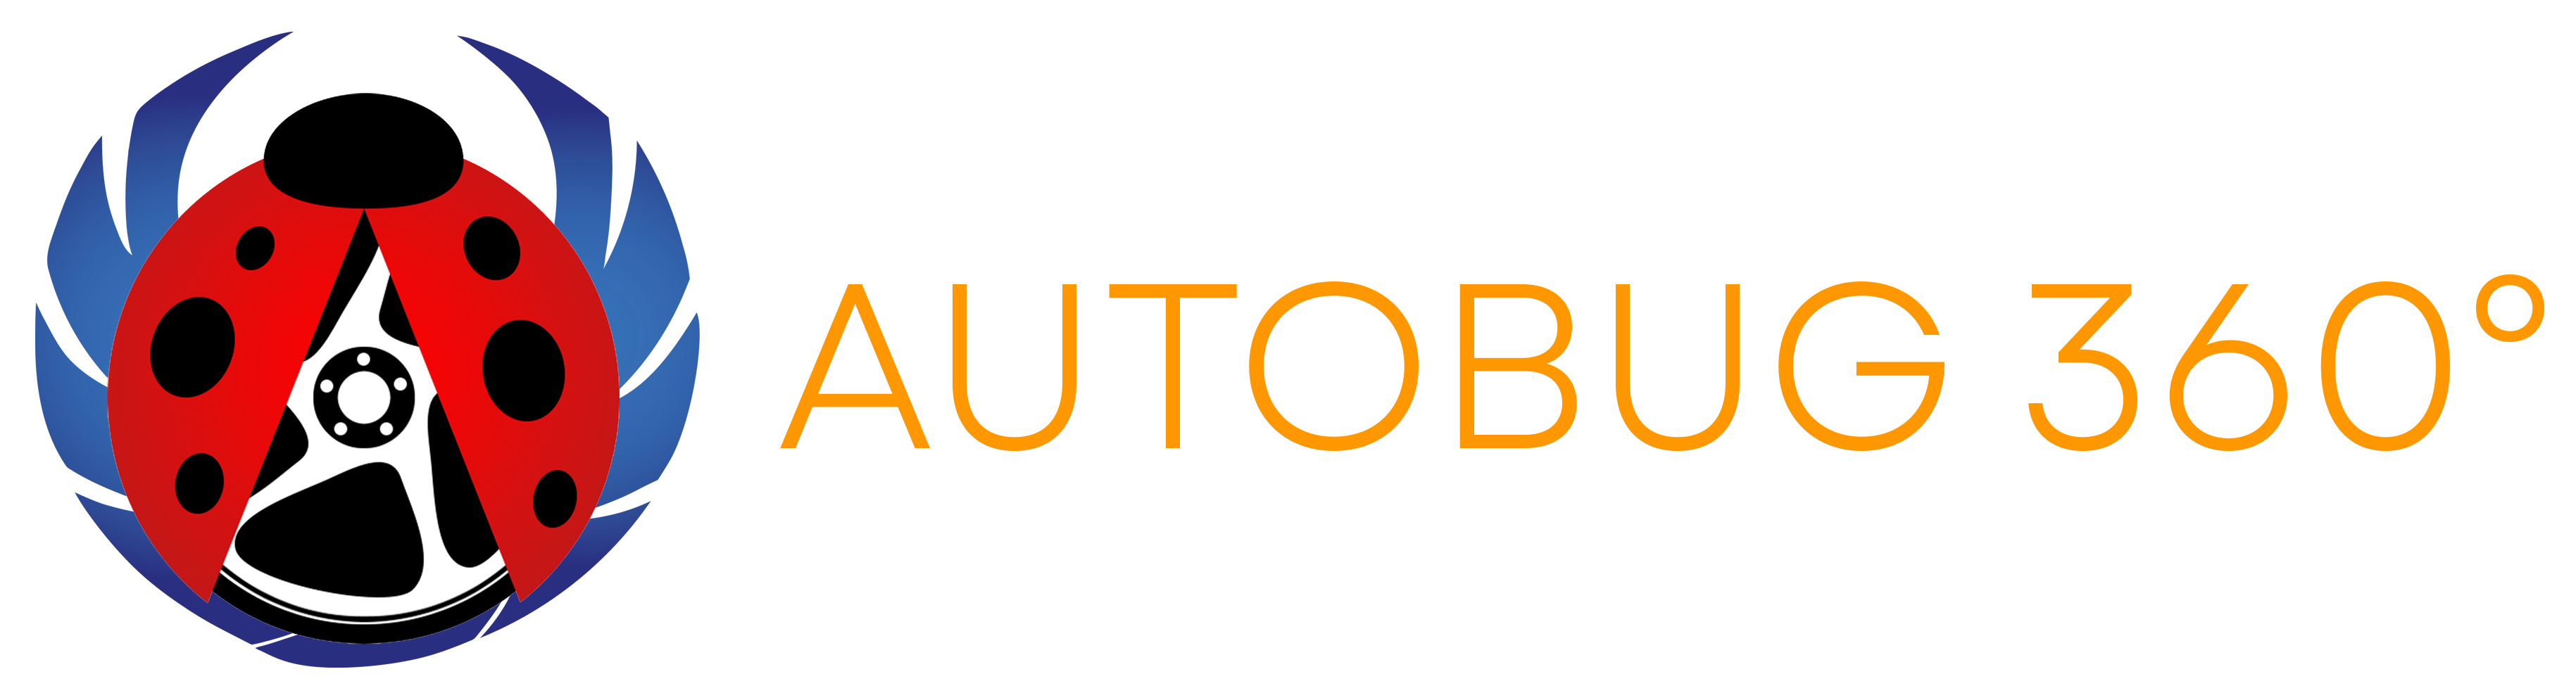 Autobug360